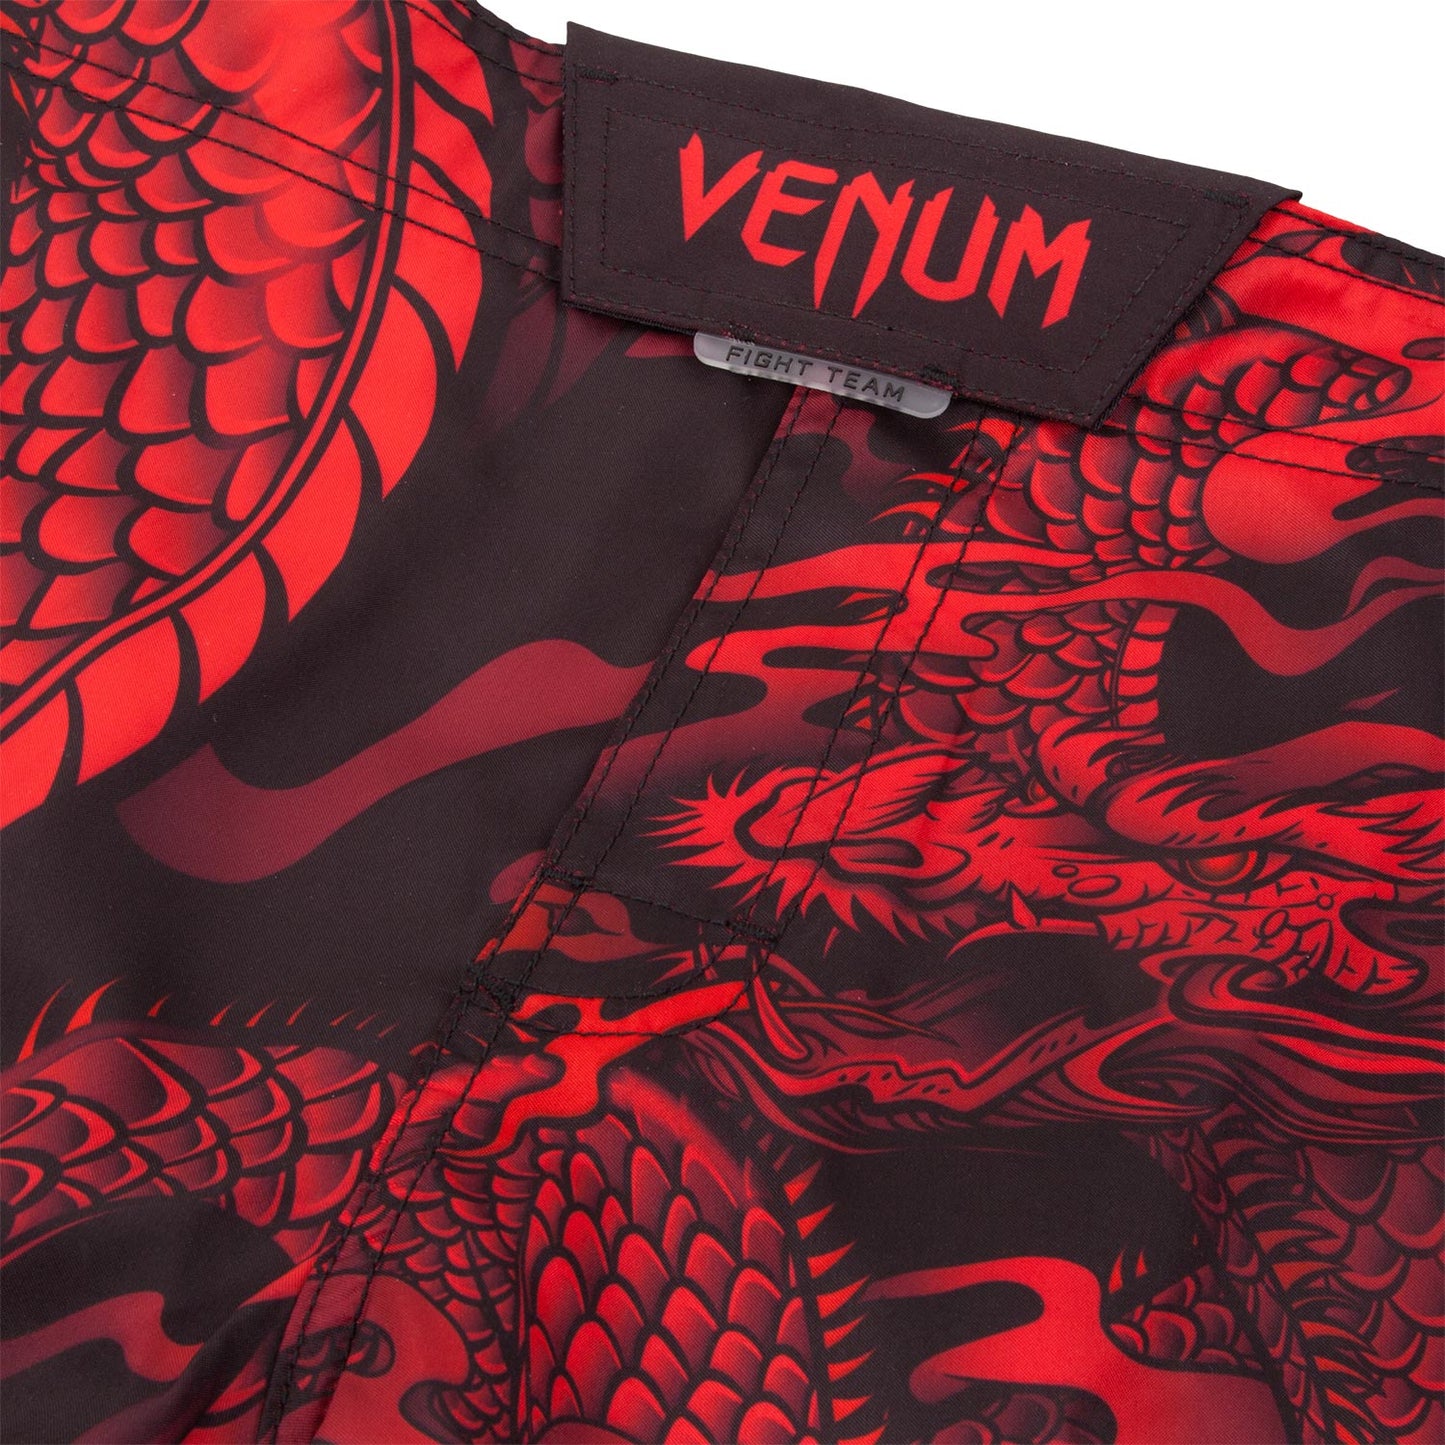 Pantaloncini da combattimento Venum Dragon's Flight -  Nero/Rosso